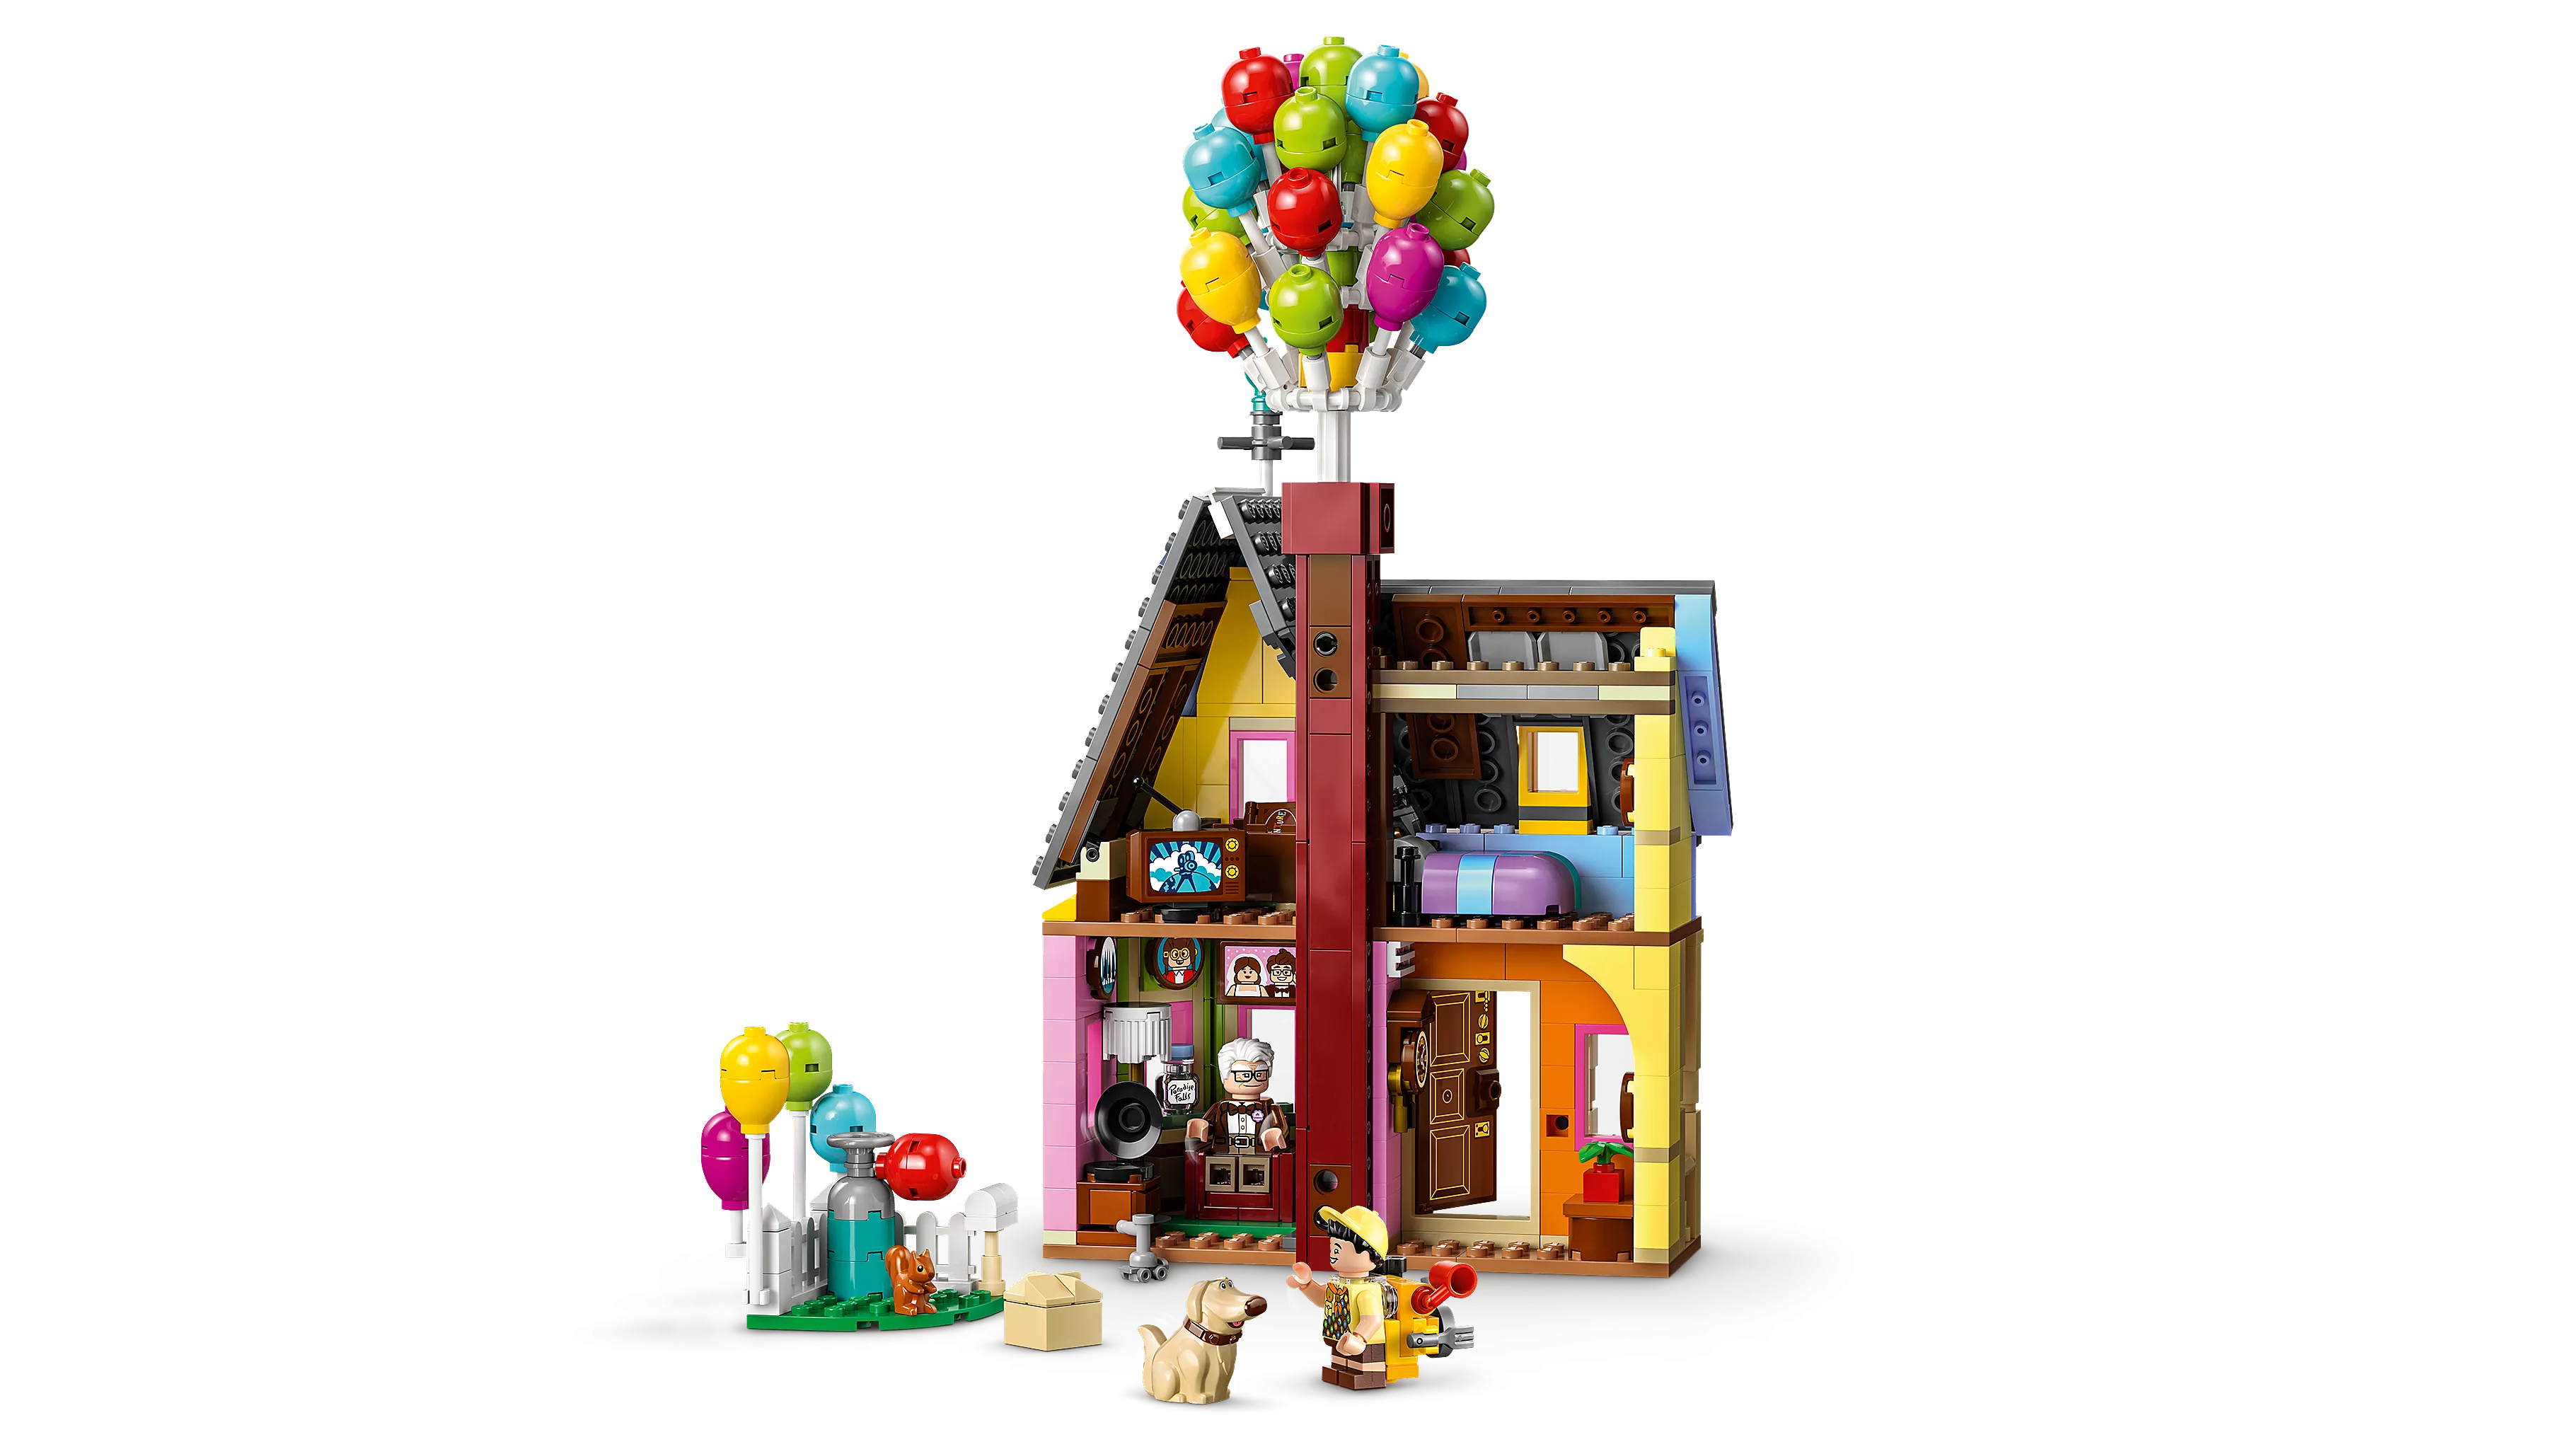 LEGO 43217 Carls Haus aus „Oben“